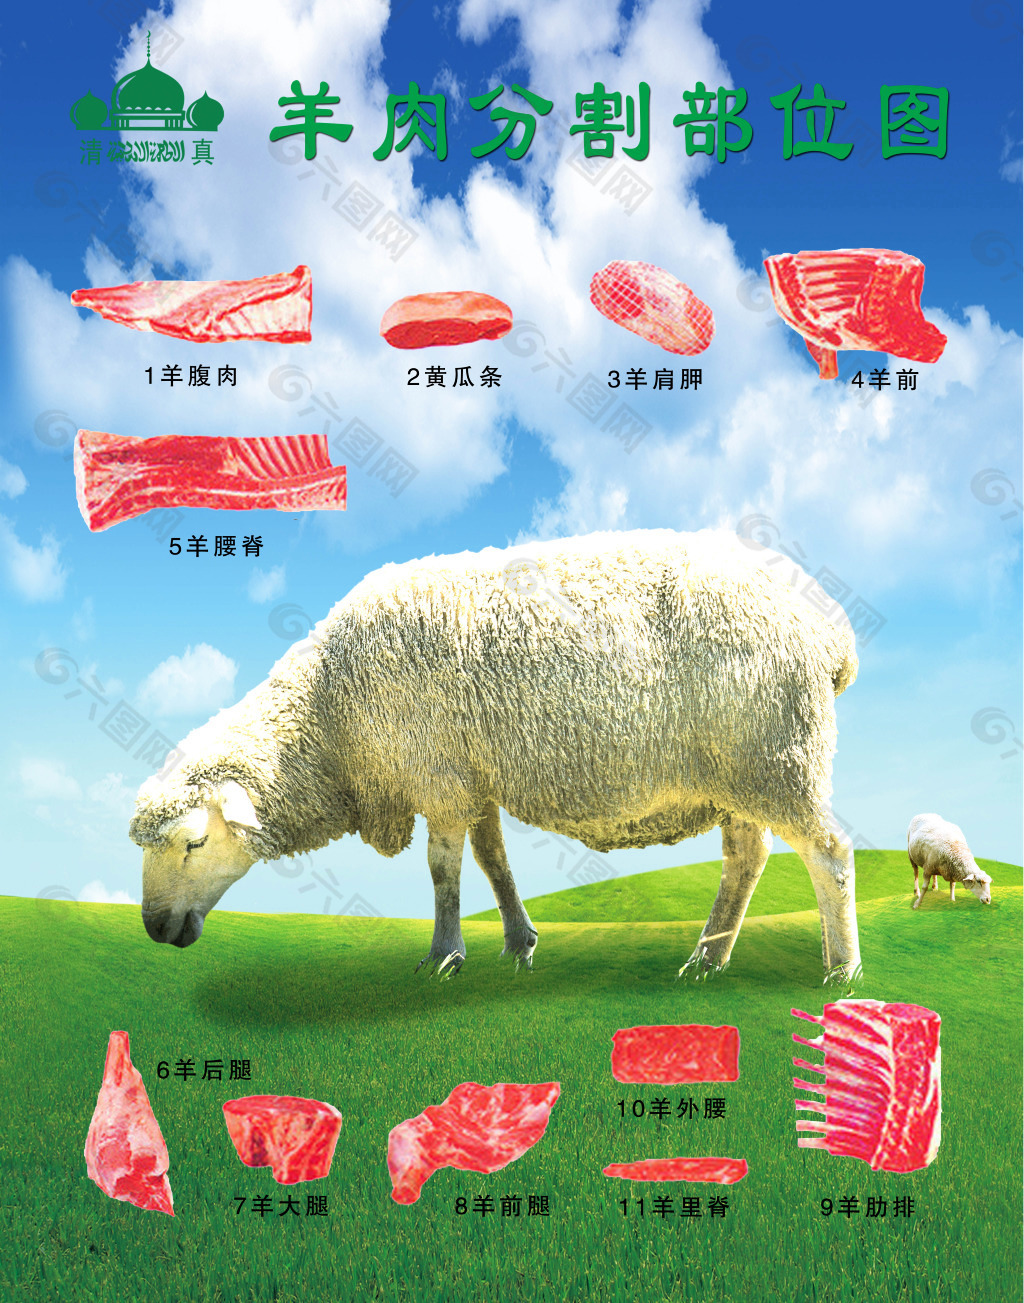 羊肉分割图平面广告素材免费下载(图片编号:5488541)